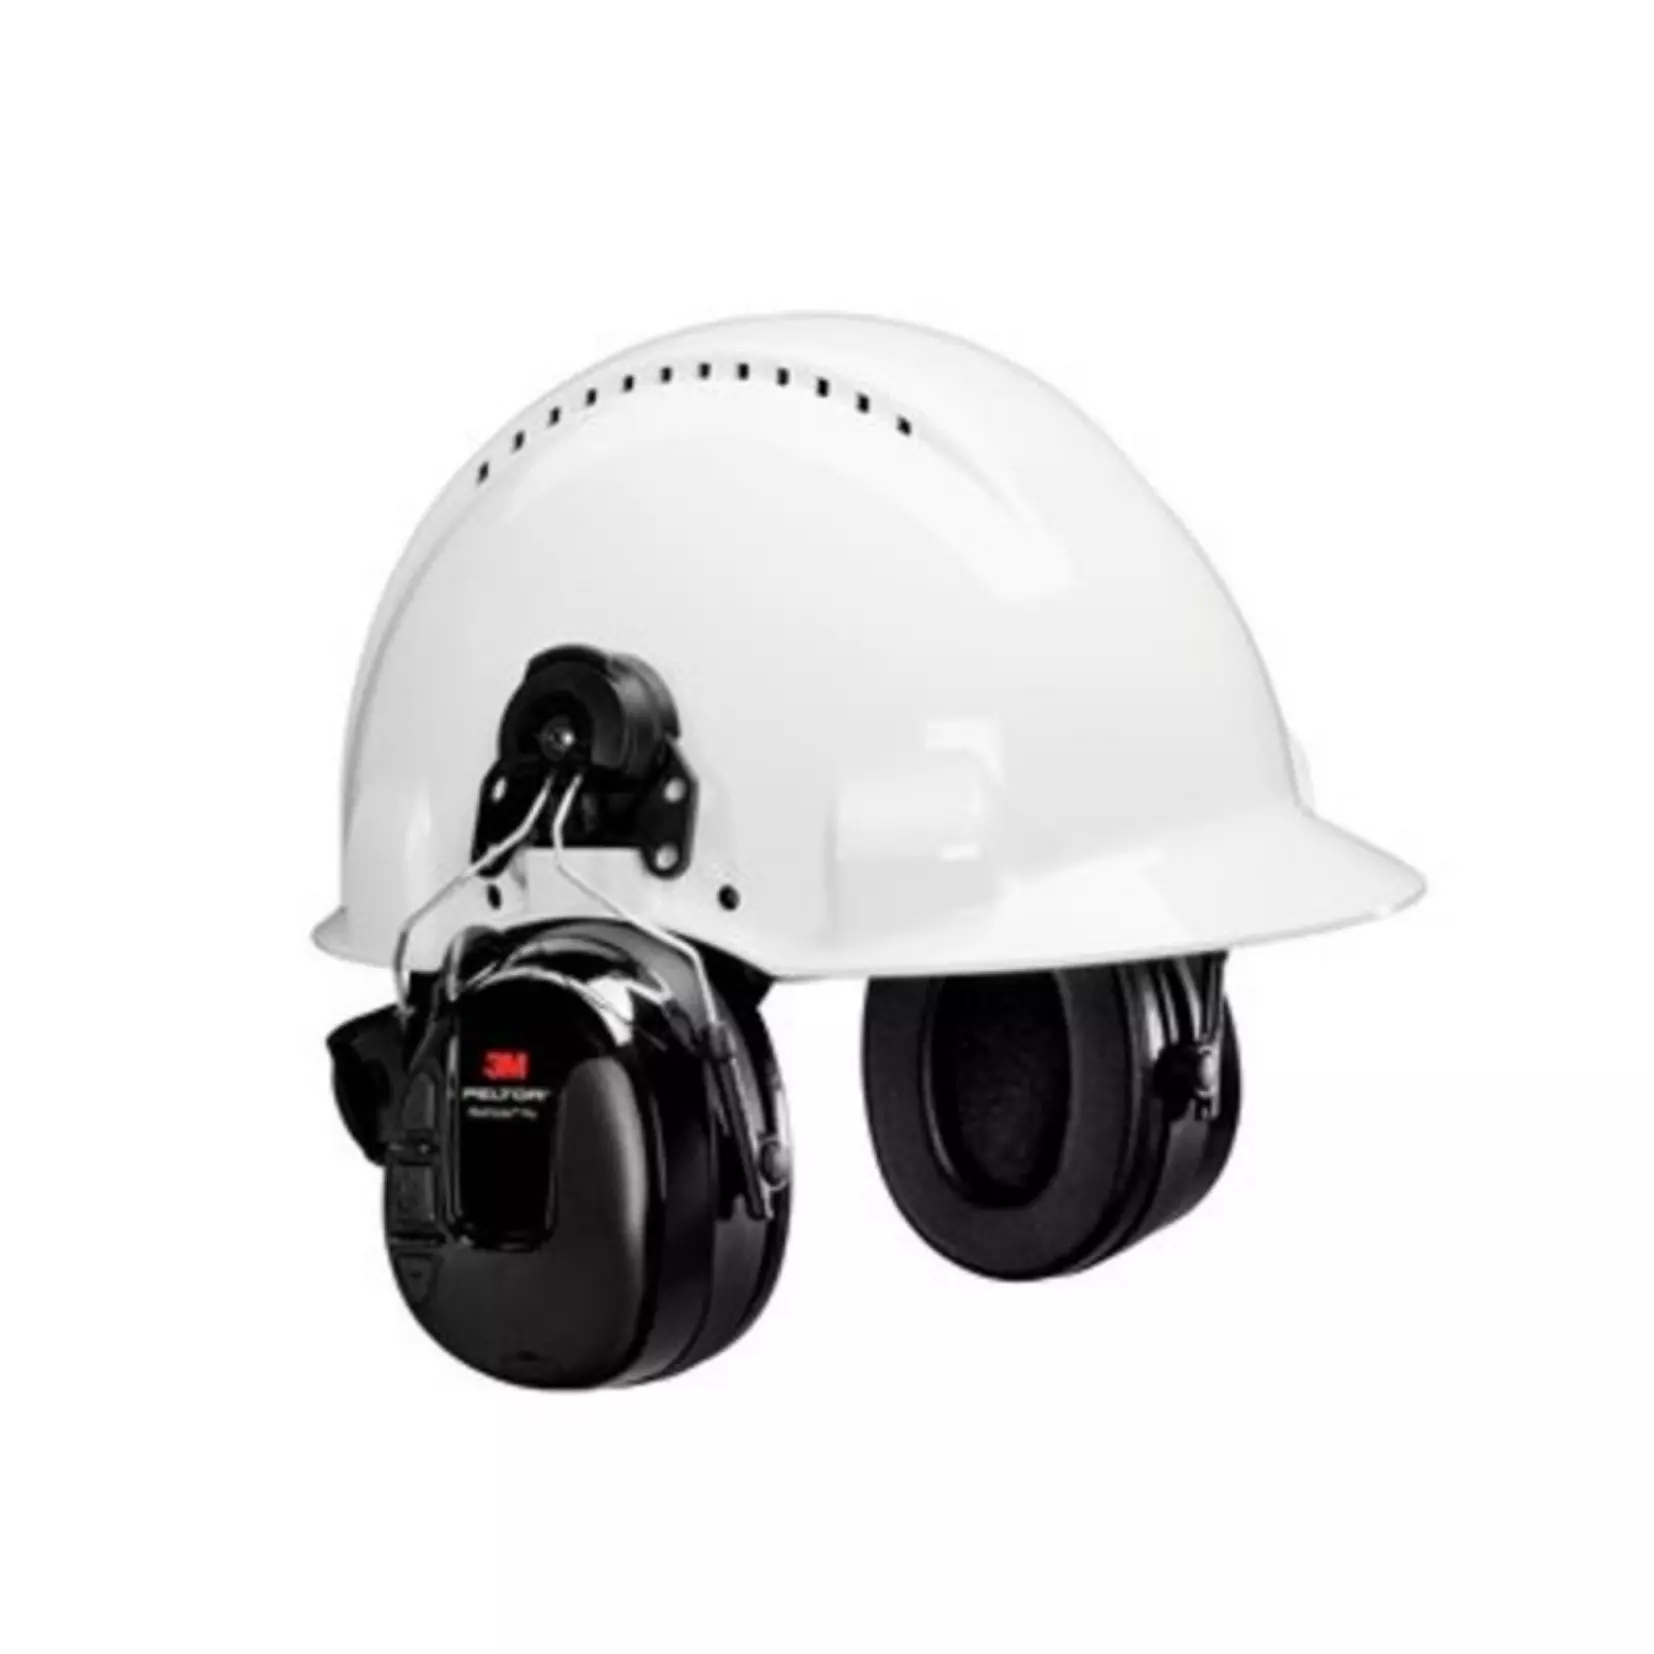 Peltor WorkTunes Pro FM with helmet mount